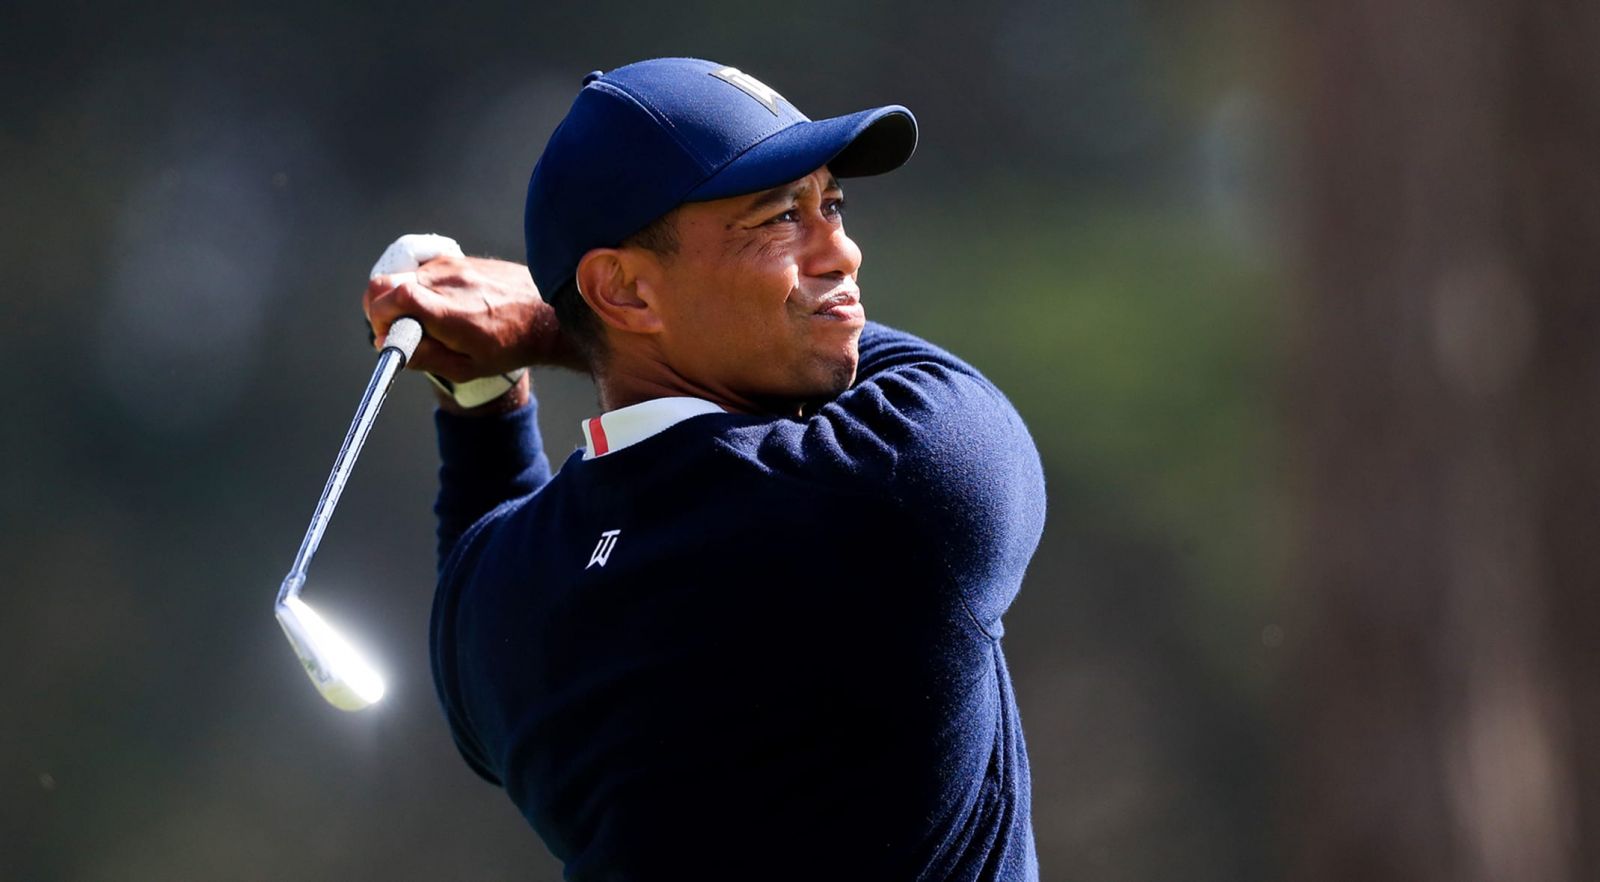 Giới thể thao toàn thế giới động viên Tiger Woods sớm trở lại sau tai nạn xe hơi nghiêm trọng